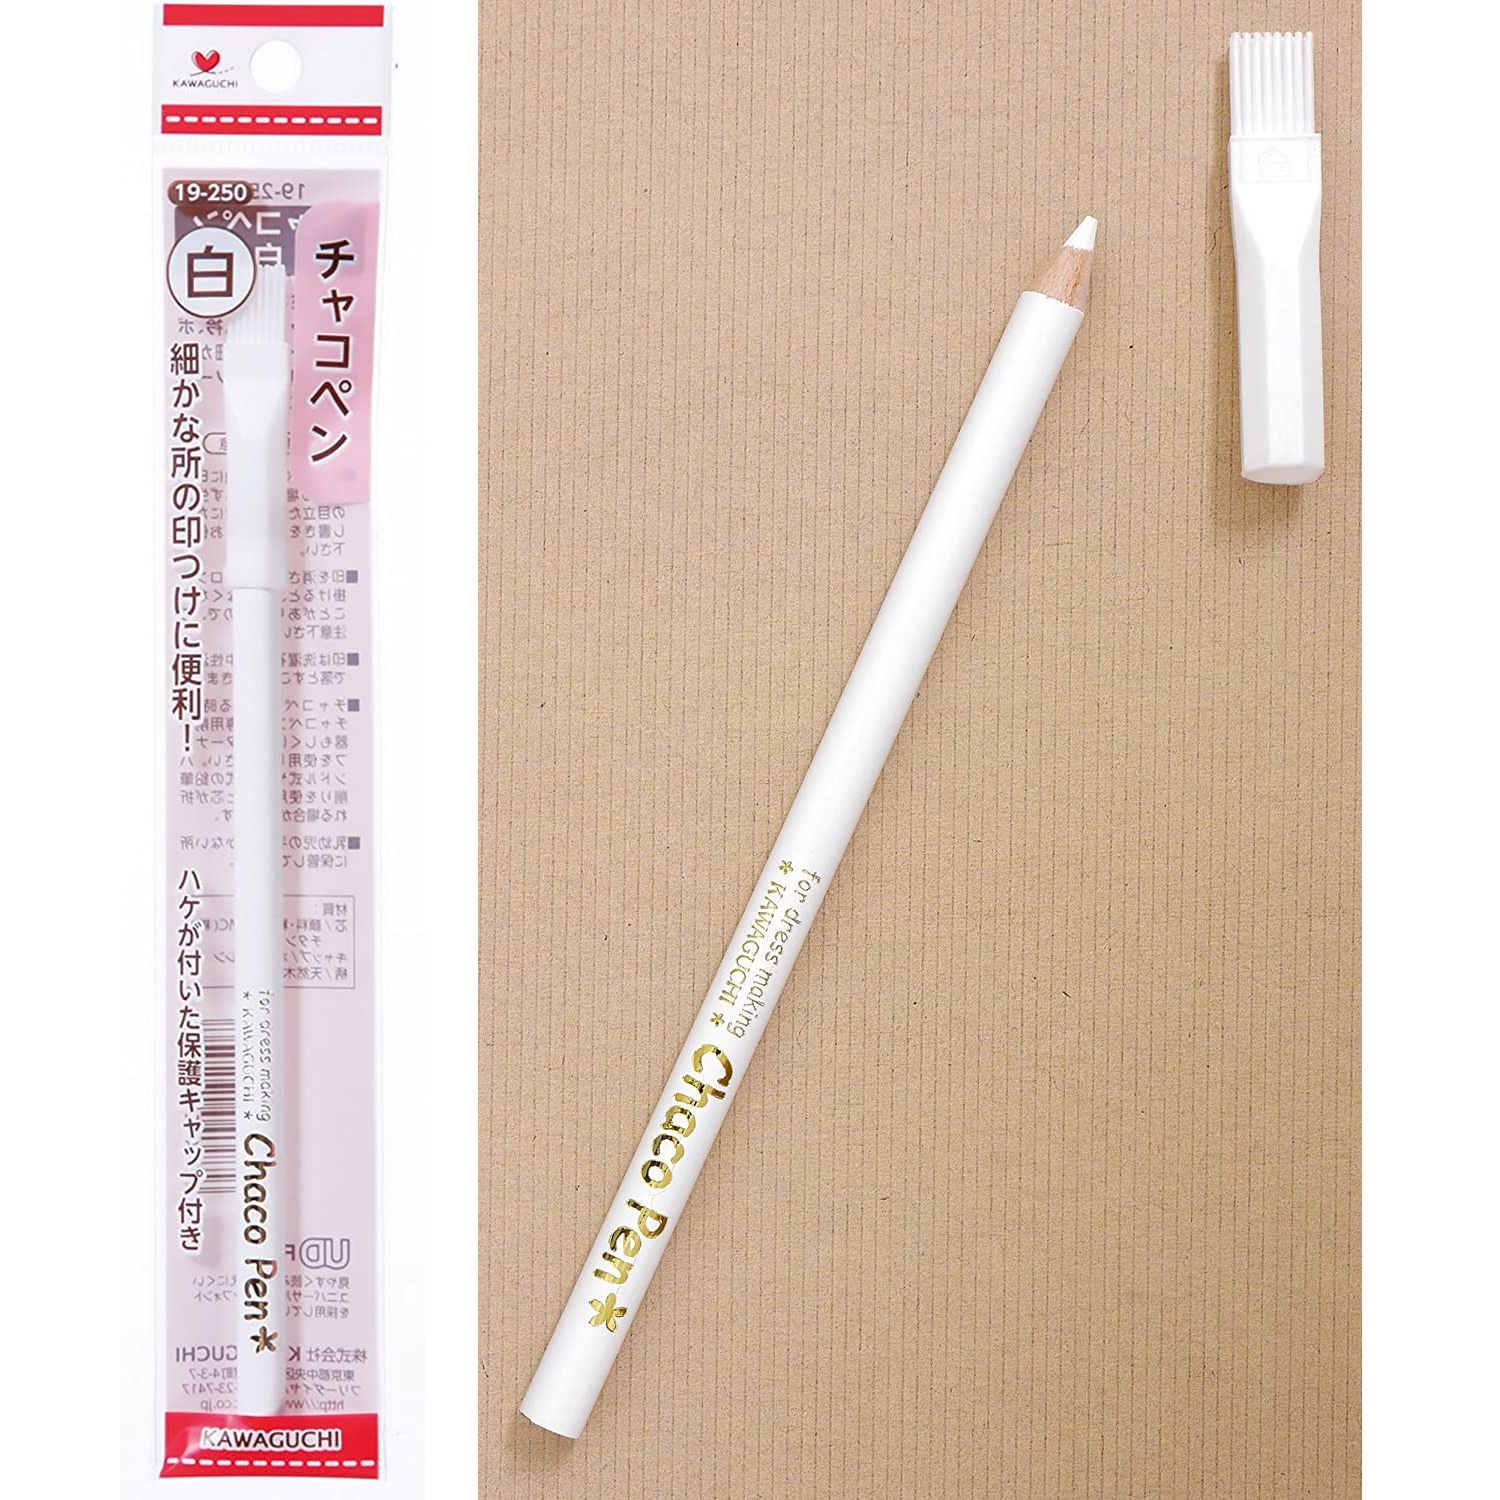 TK19250 KAWAGUCHI Charcoal Pen White (pcs)